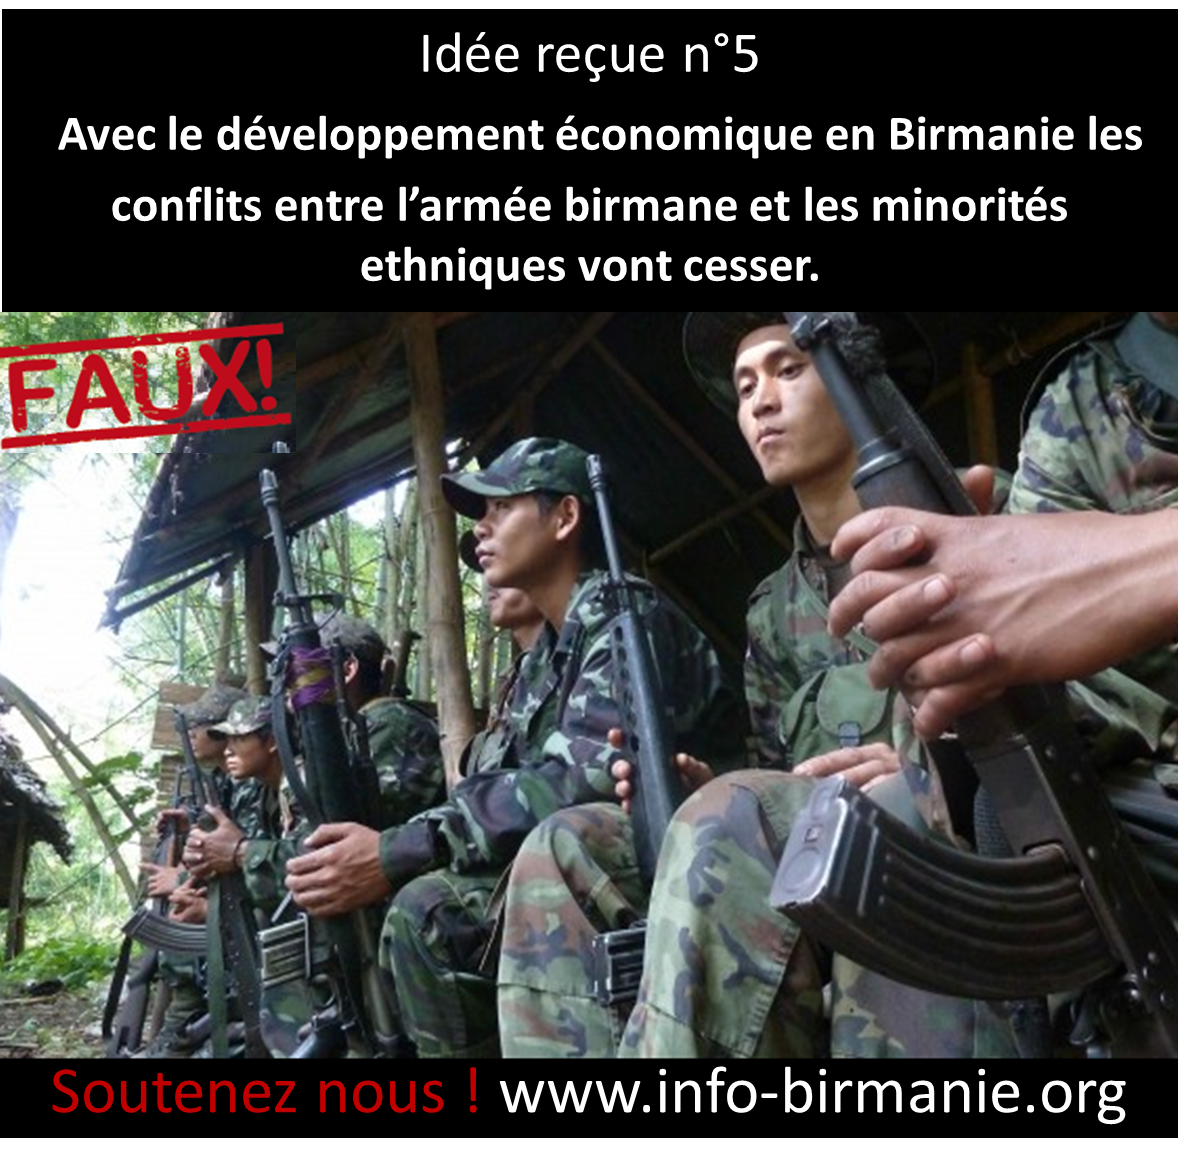 Idée reçue n°5 : Avec le développement économique en Birmanie les conflits entre l’armée birmane et les minorités ethniques vont cesser